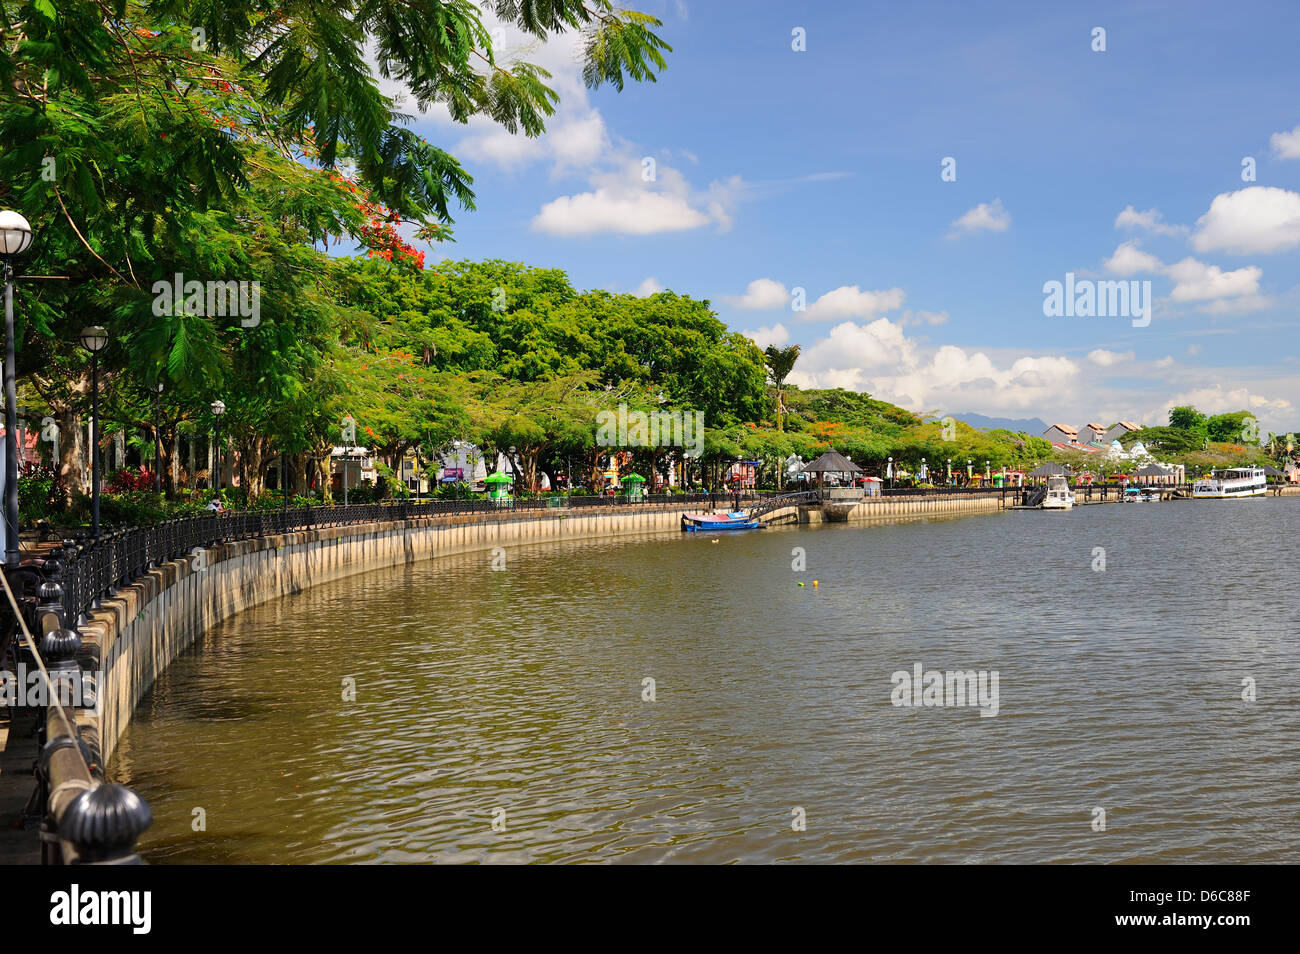 Waterfront on Sungai Sarawak River in Kuching, Sarawak, Borneo Stock Photo